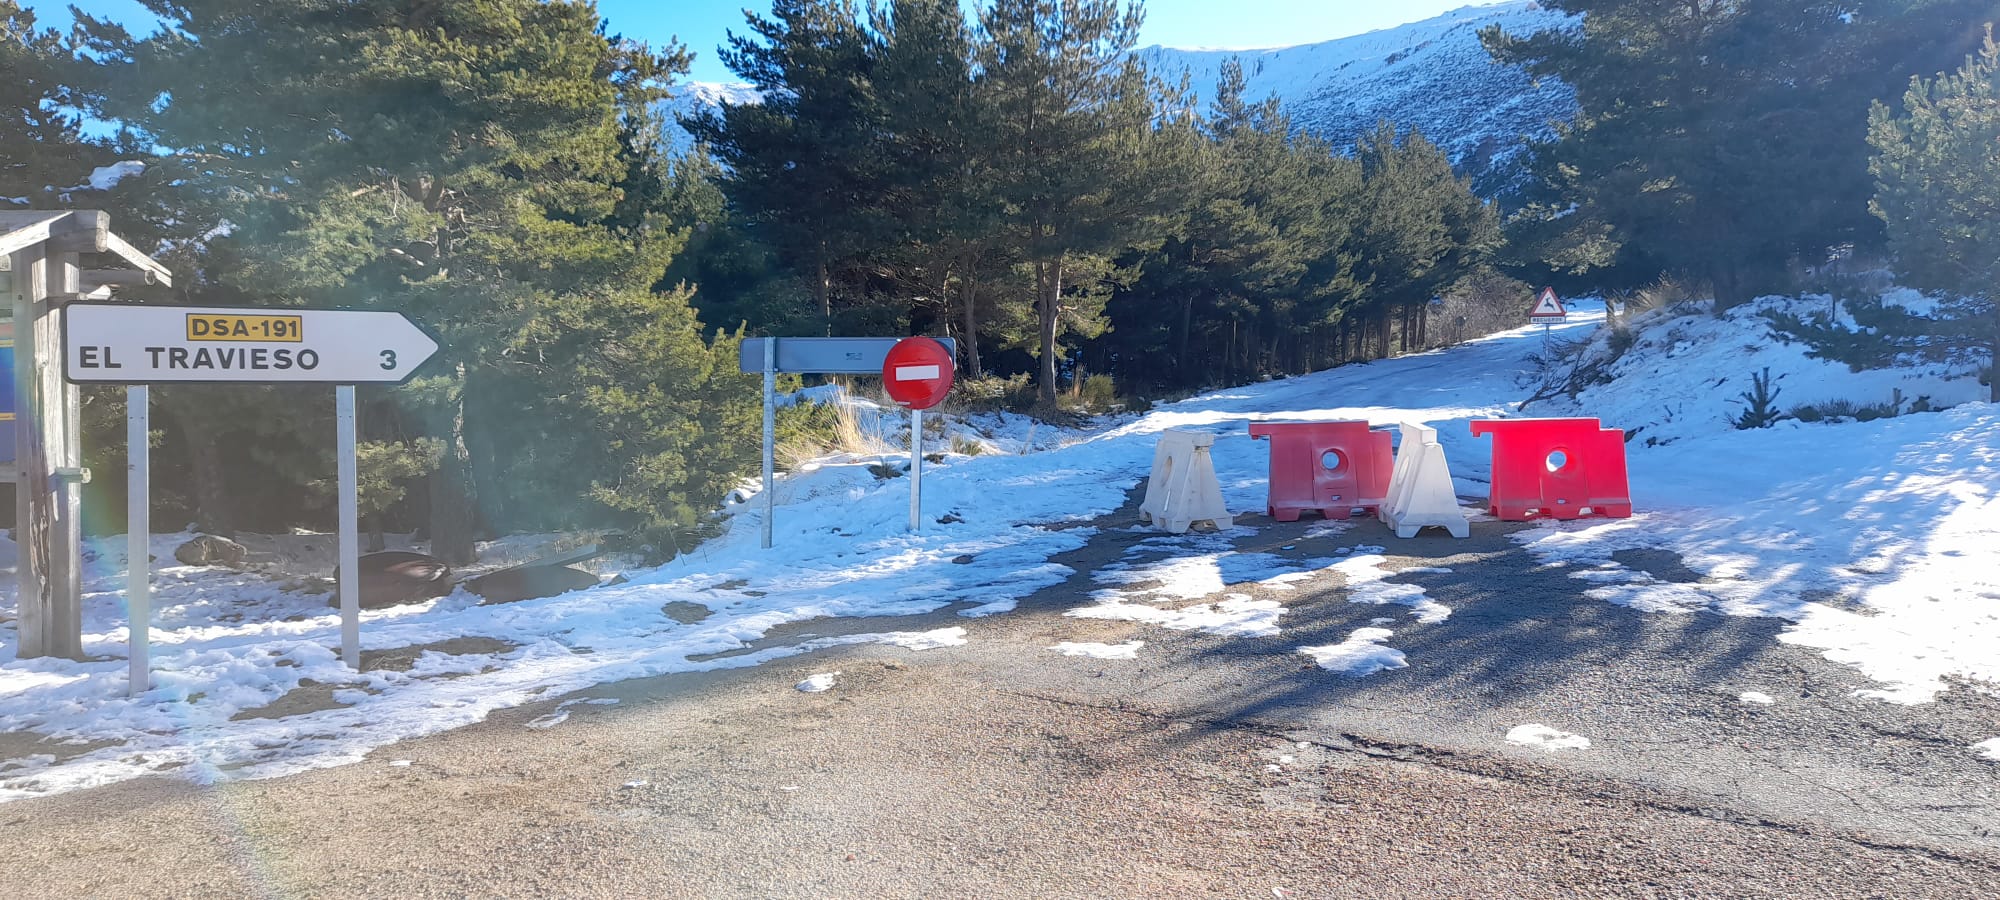 Foto 2 - El nuevo cierre del acceso al Travieso provoca las quejas de los vecinos de Candelario